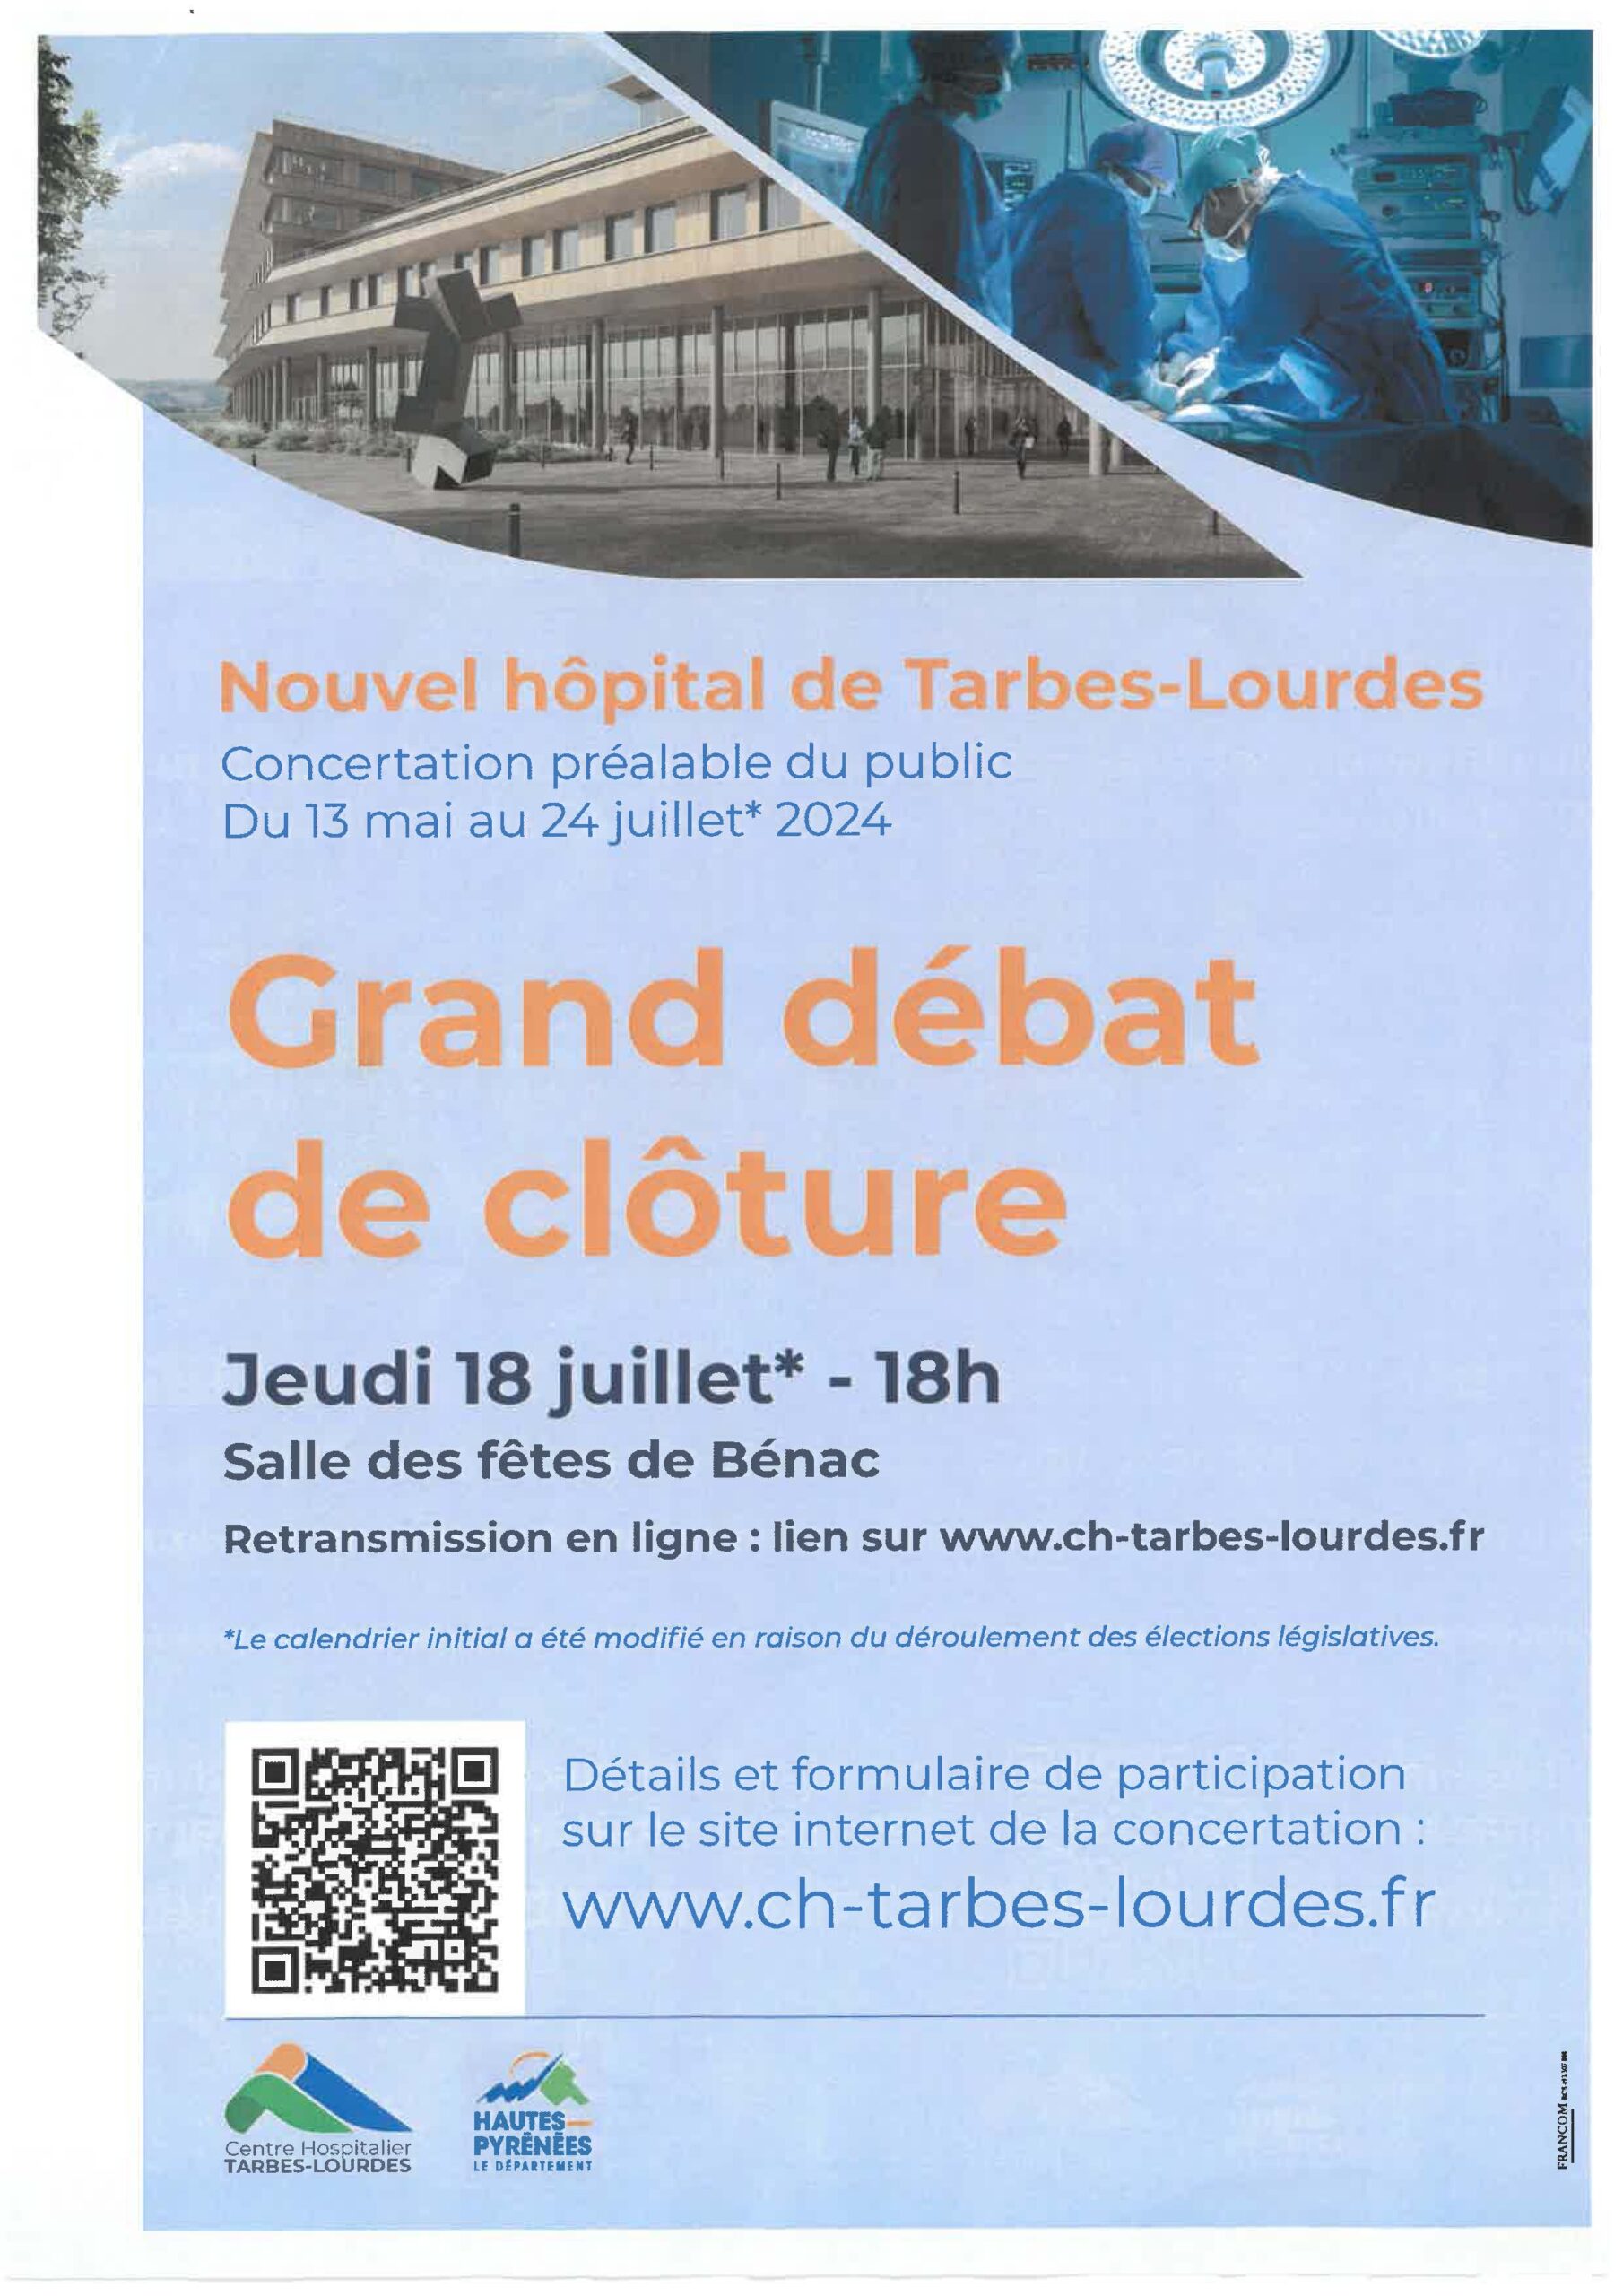 Affiche concernant le nouvel hôpital de Tarbes et le grand débat de cloture du 18 juillet à 18h - Salle des fêtes de Bénac.